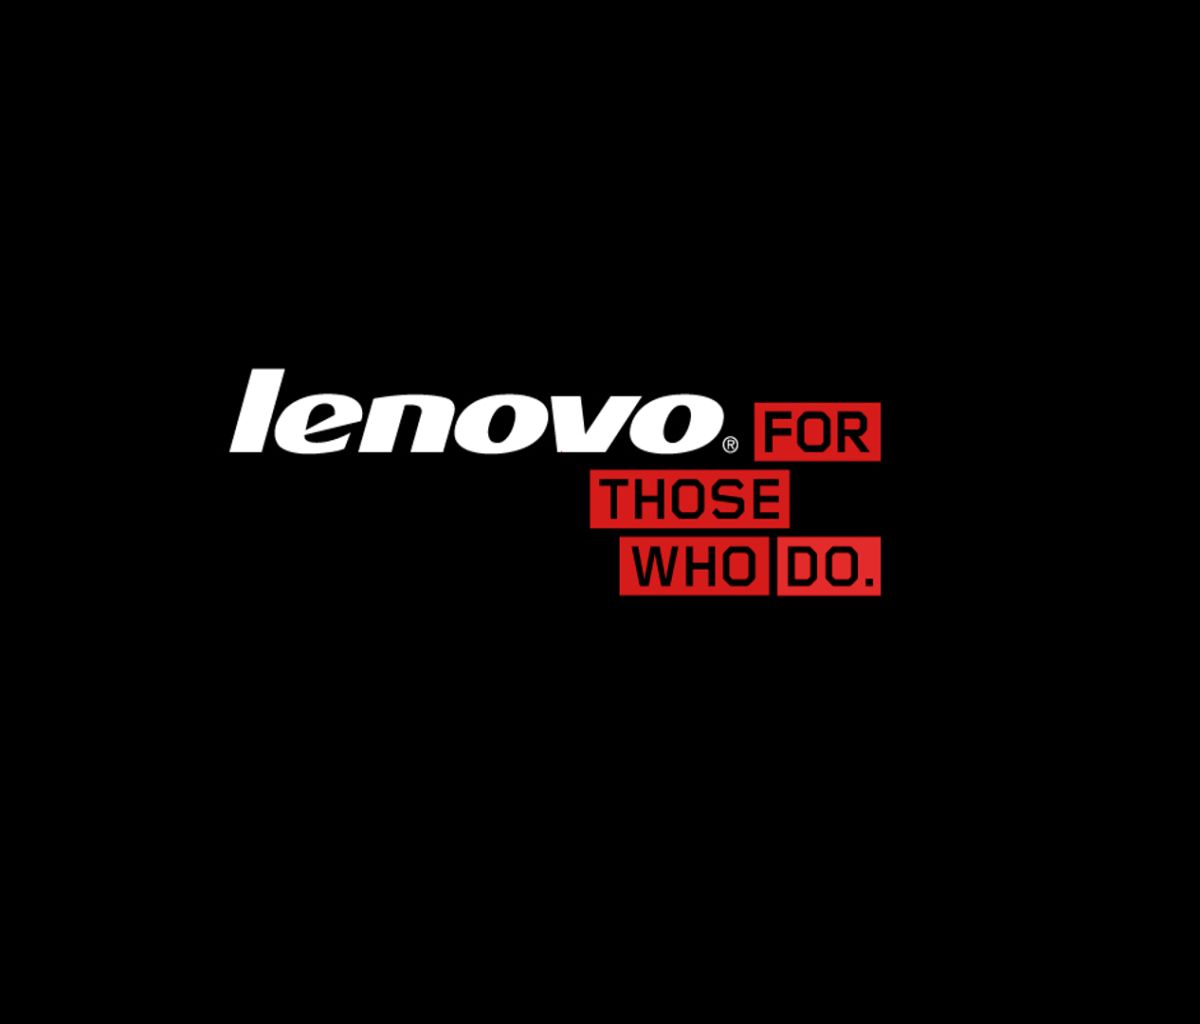 technology, lenovo, black, logo, red